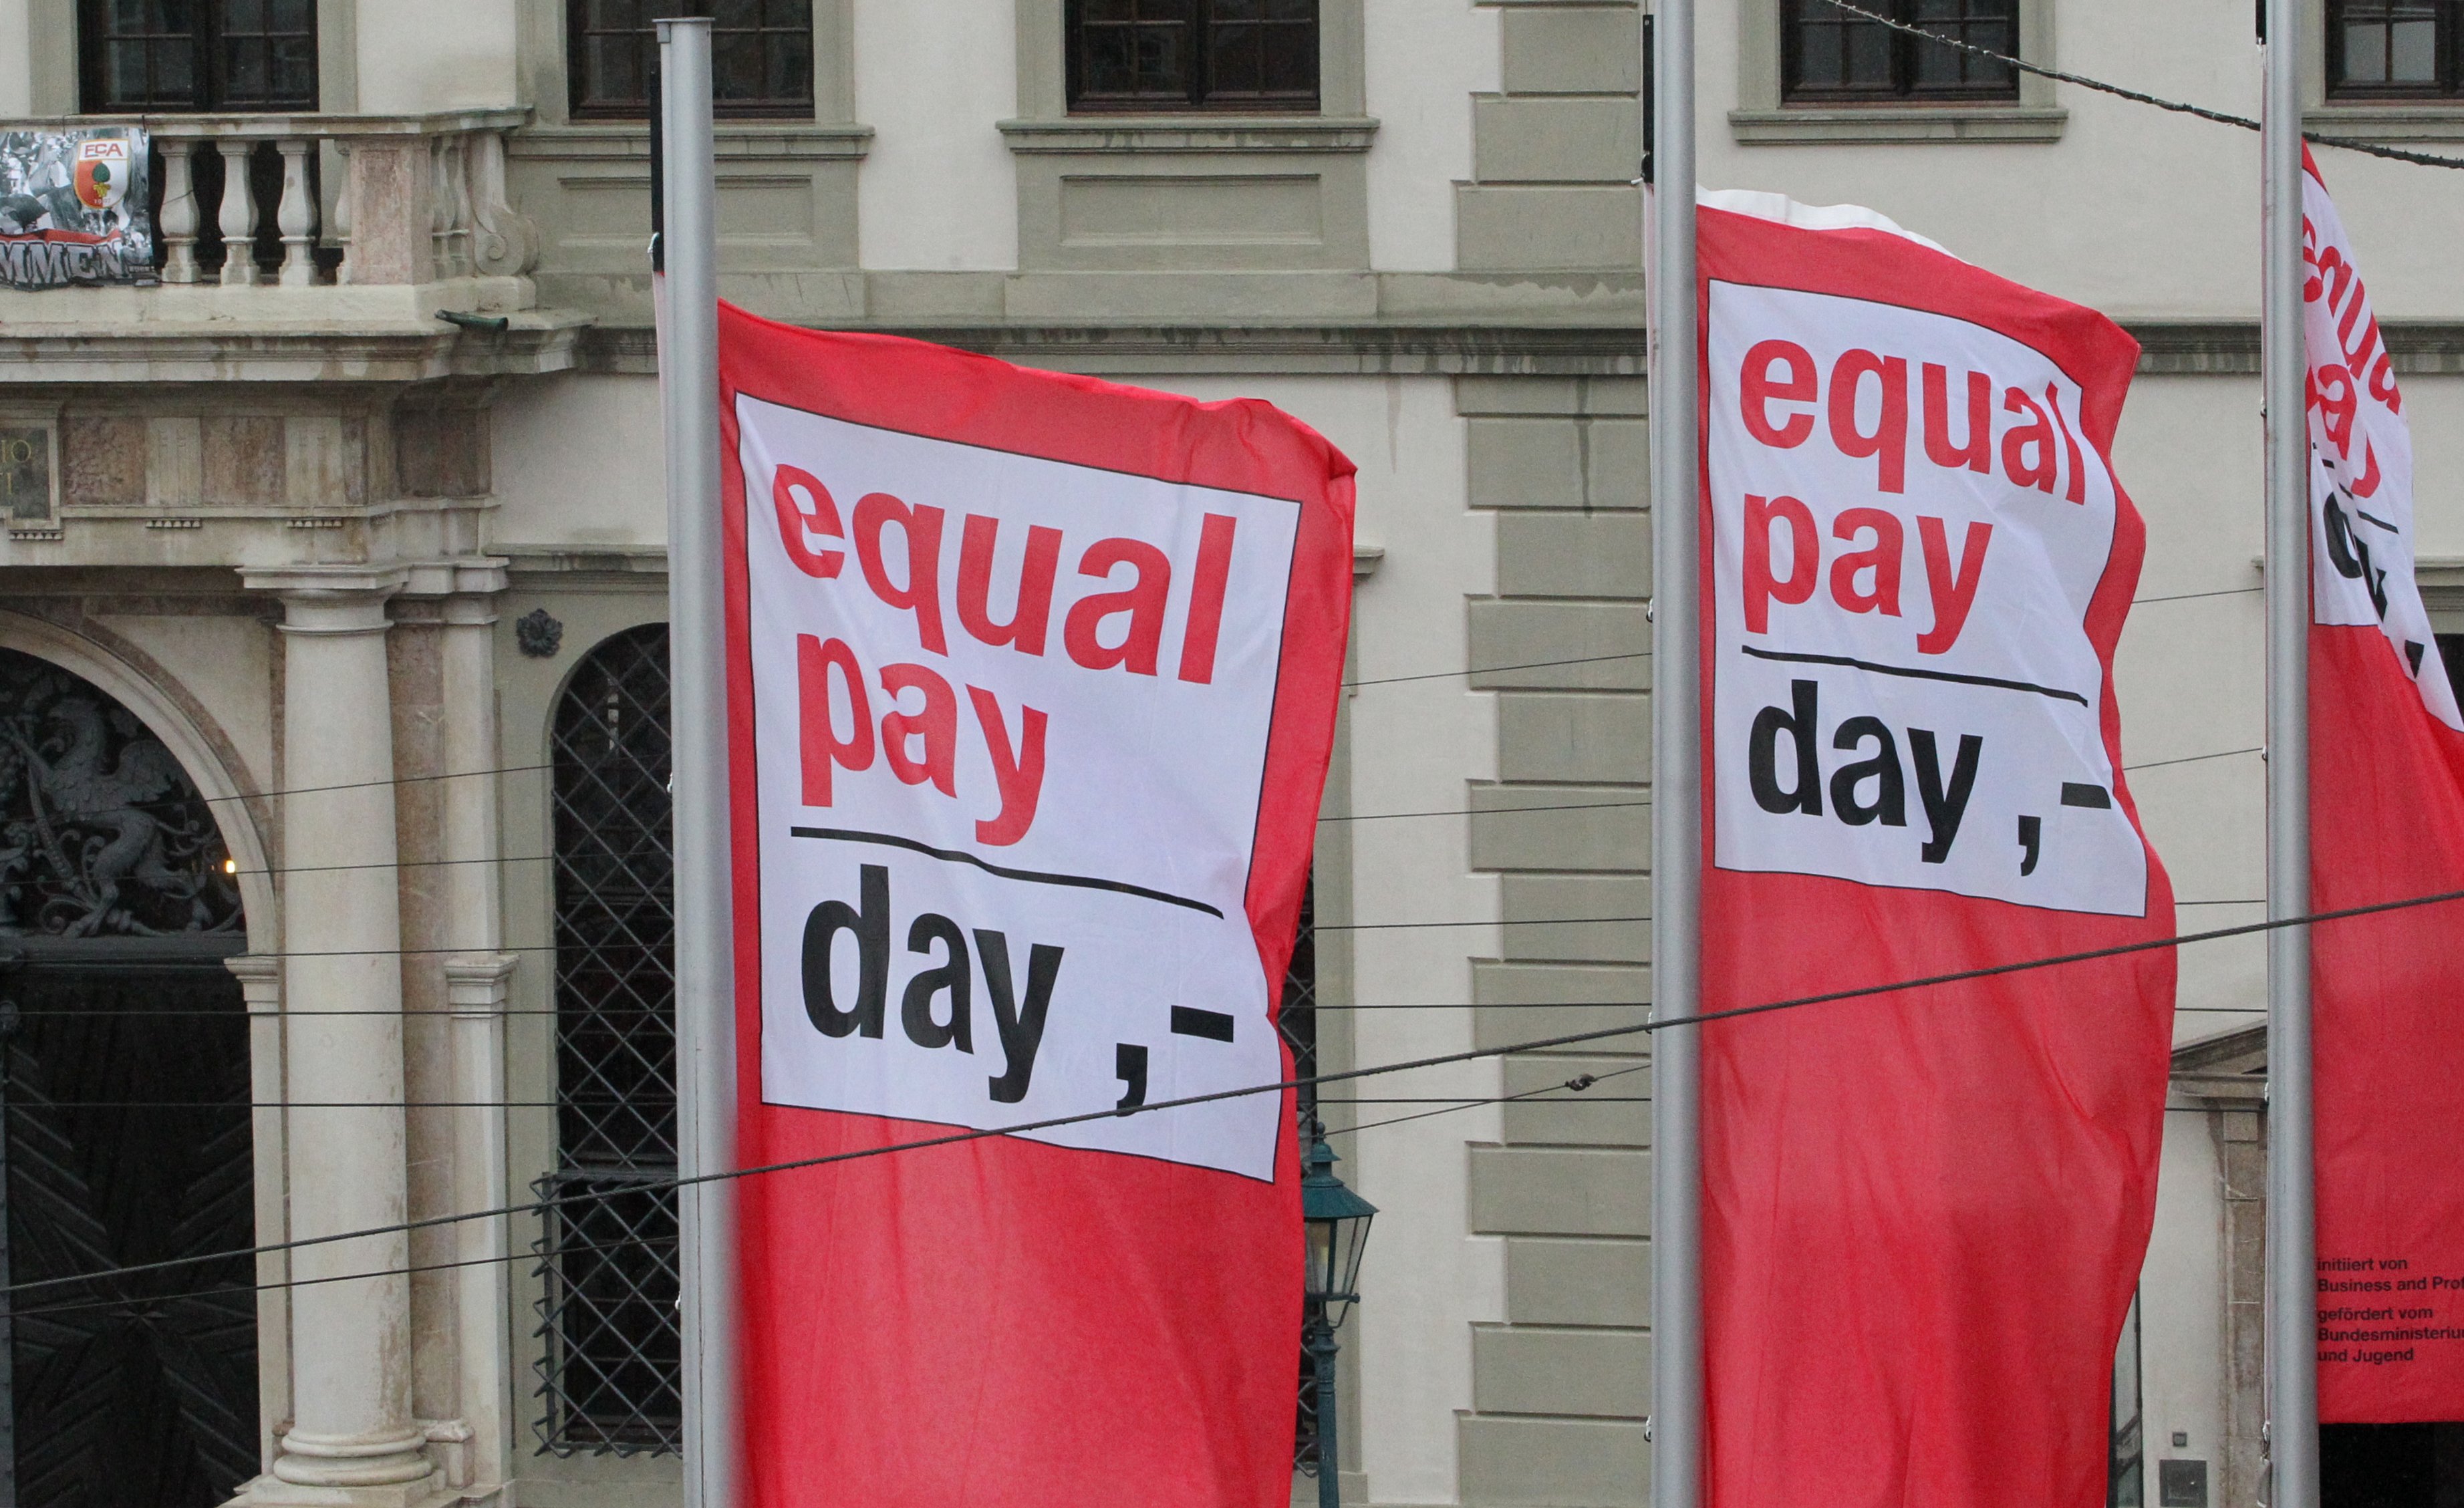 drei Fahnen auf dem Rathausplatz mit dem Aufschrift "Equal Pay Day"